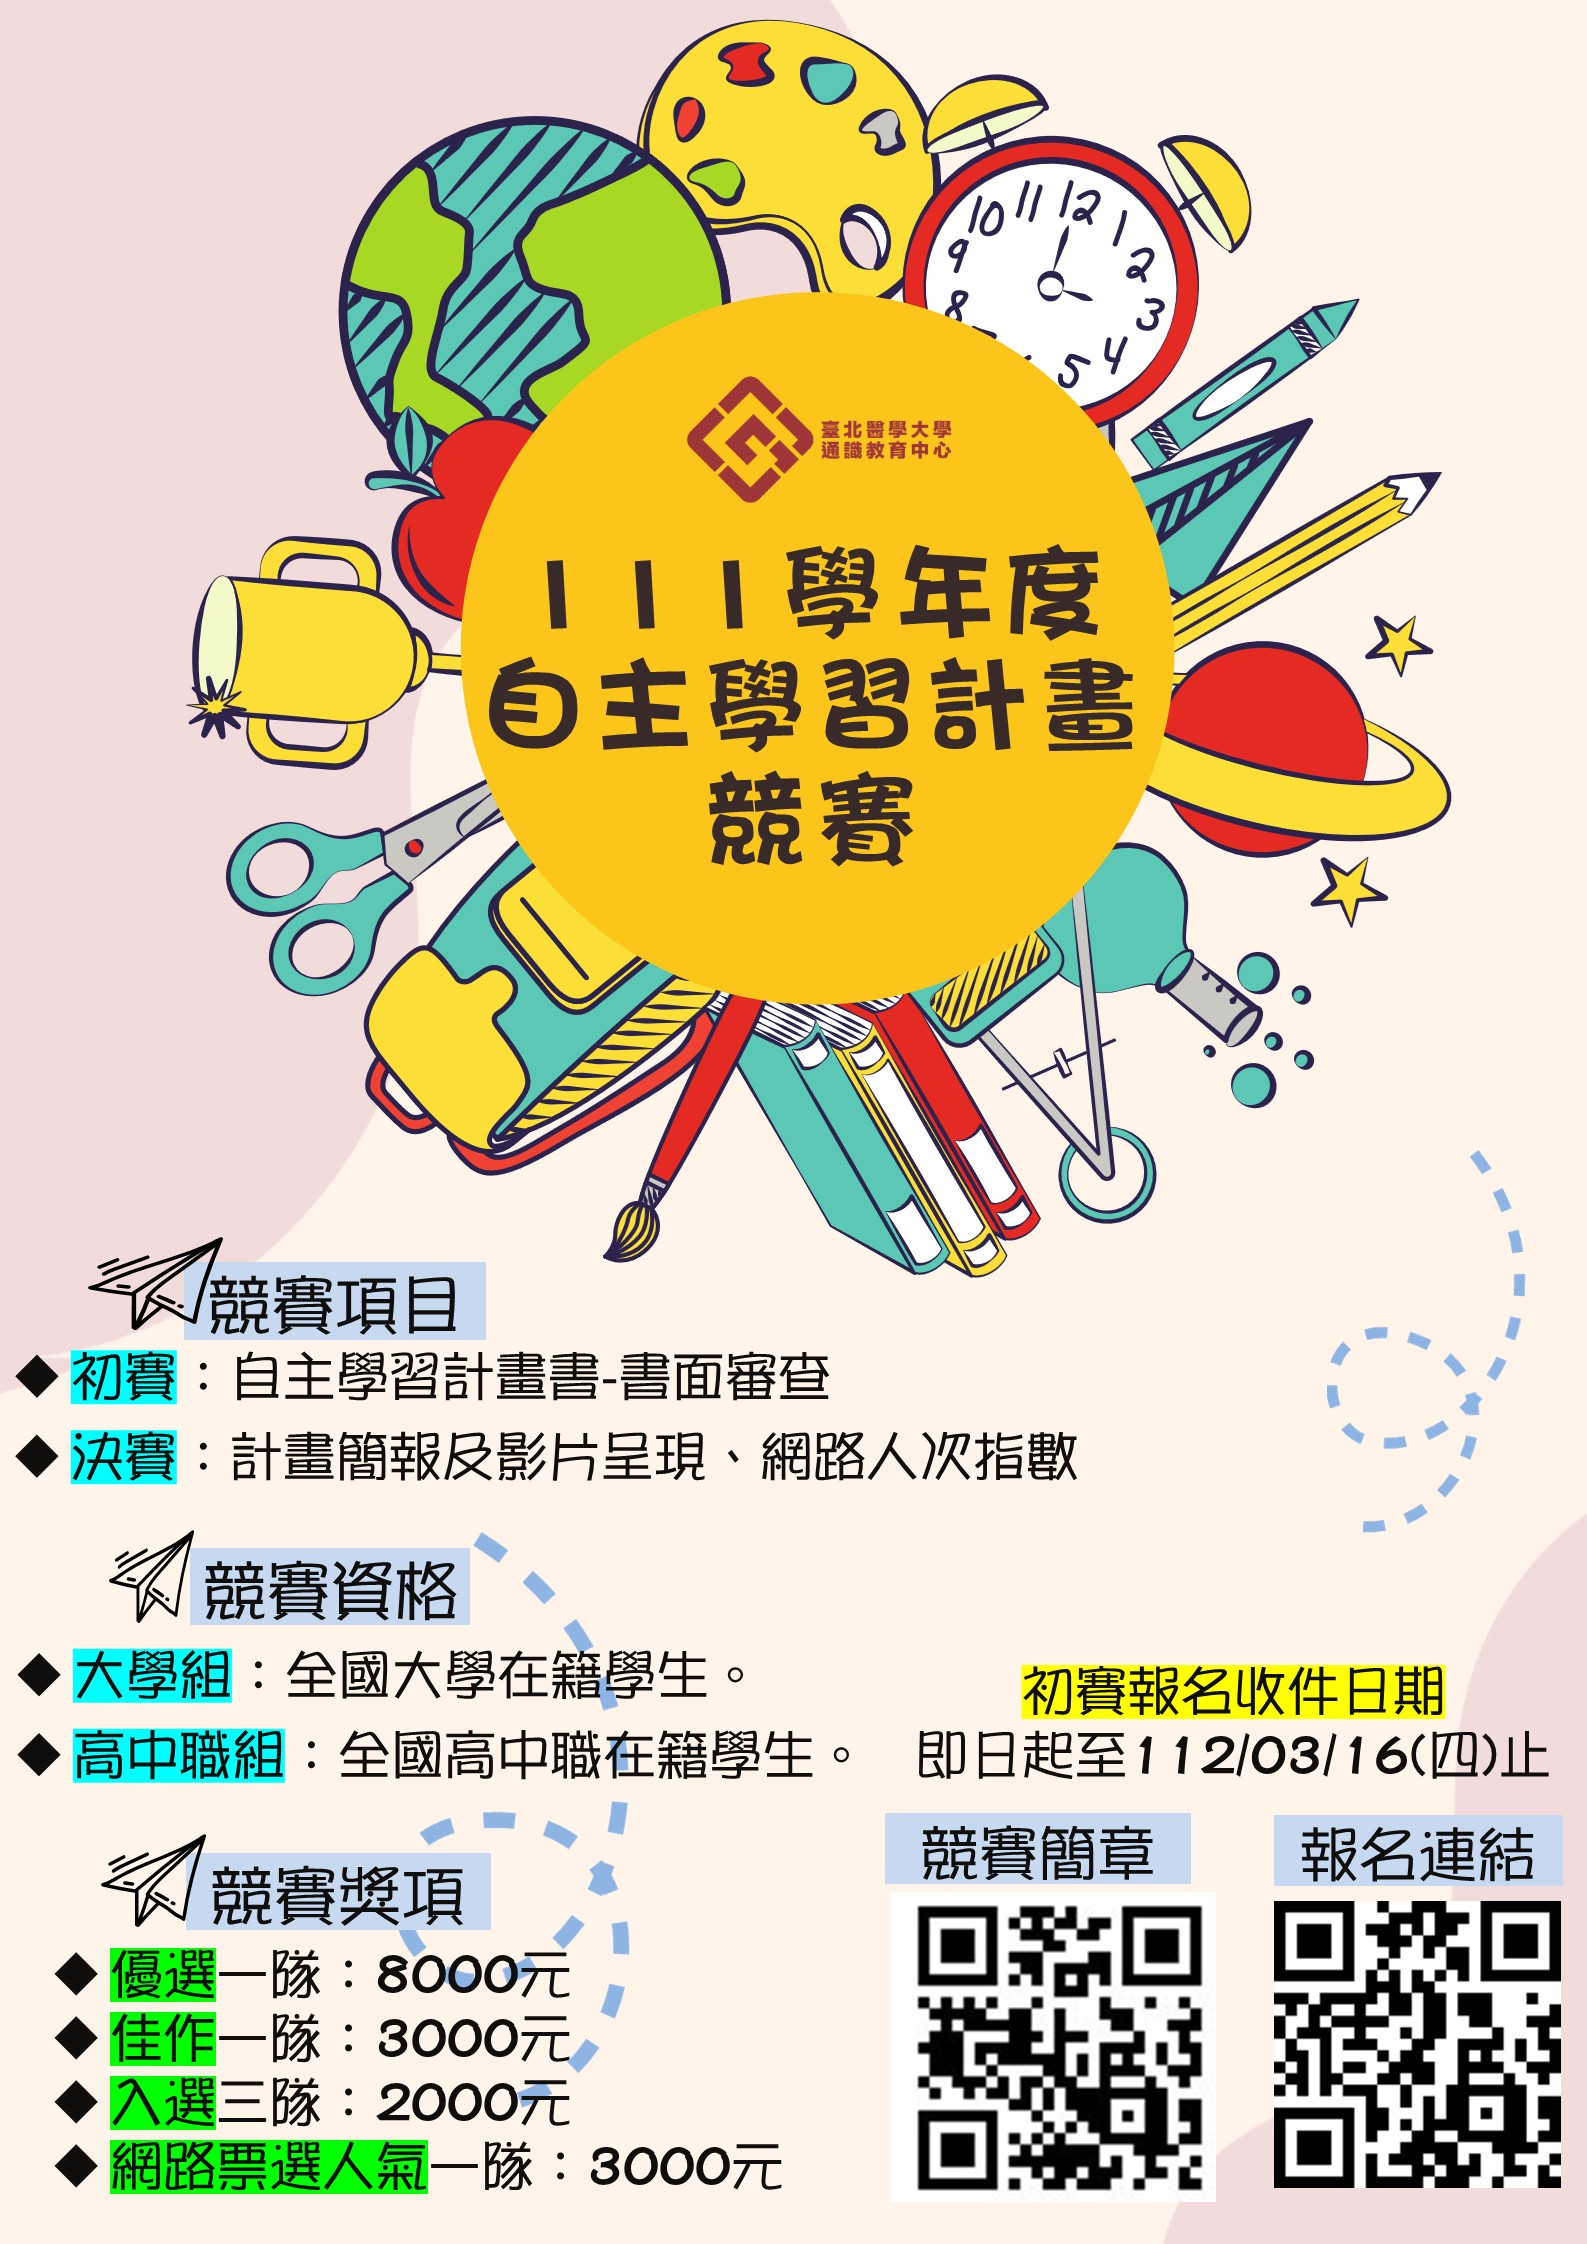 台北醫學大學舉辦「111學年度自主學習計畫競賽」活動，鼓勵學生踴躍參加